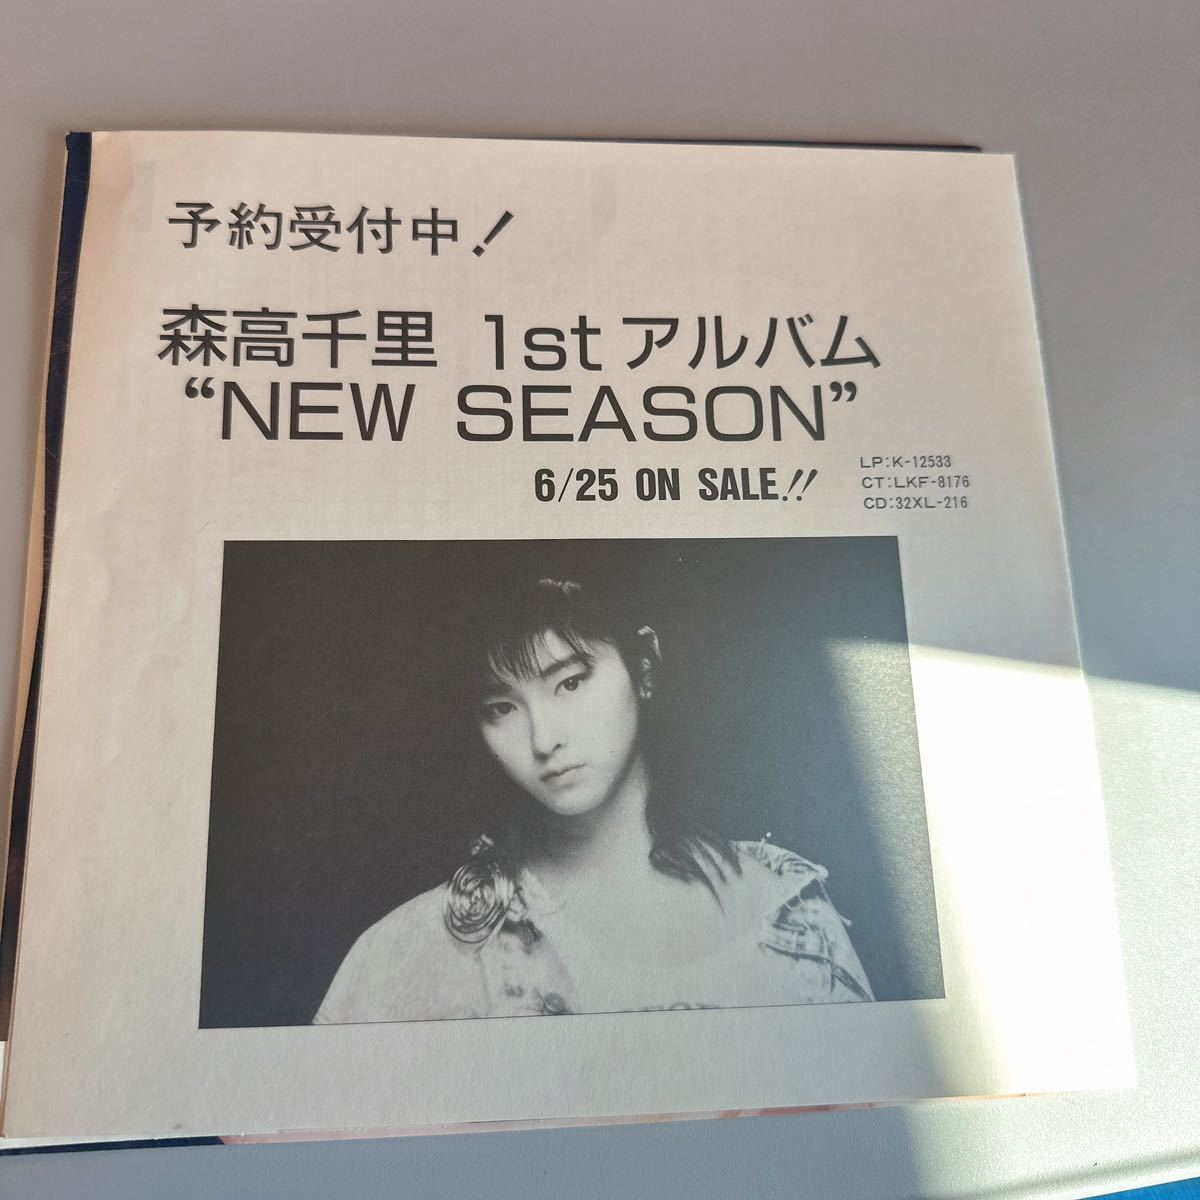 稀少シングルEP!! 森高千里 CHISATO MORITAKA NEW SEASON ピリオド デビューシングル K-1564 レコード 邦楽 あいつに恋して 1987年作品_画像3